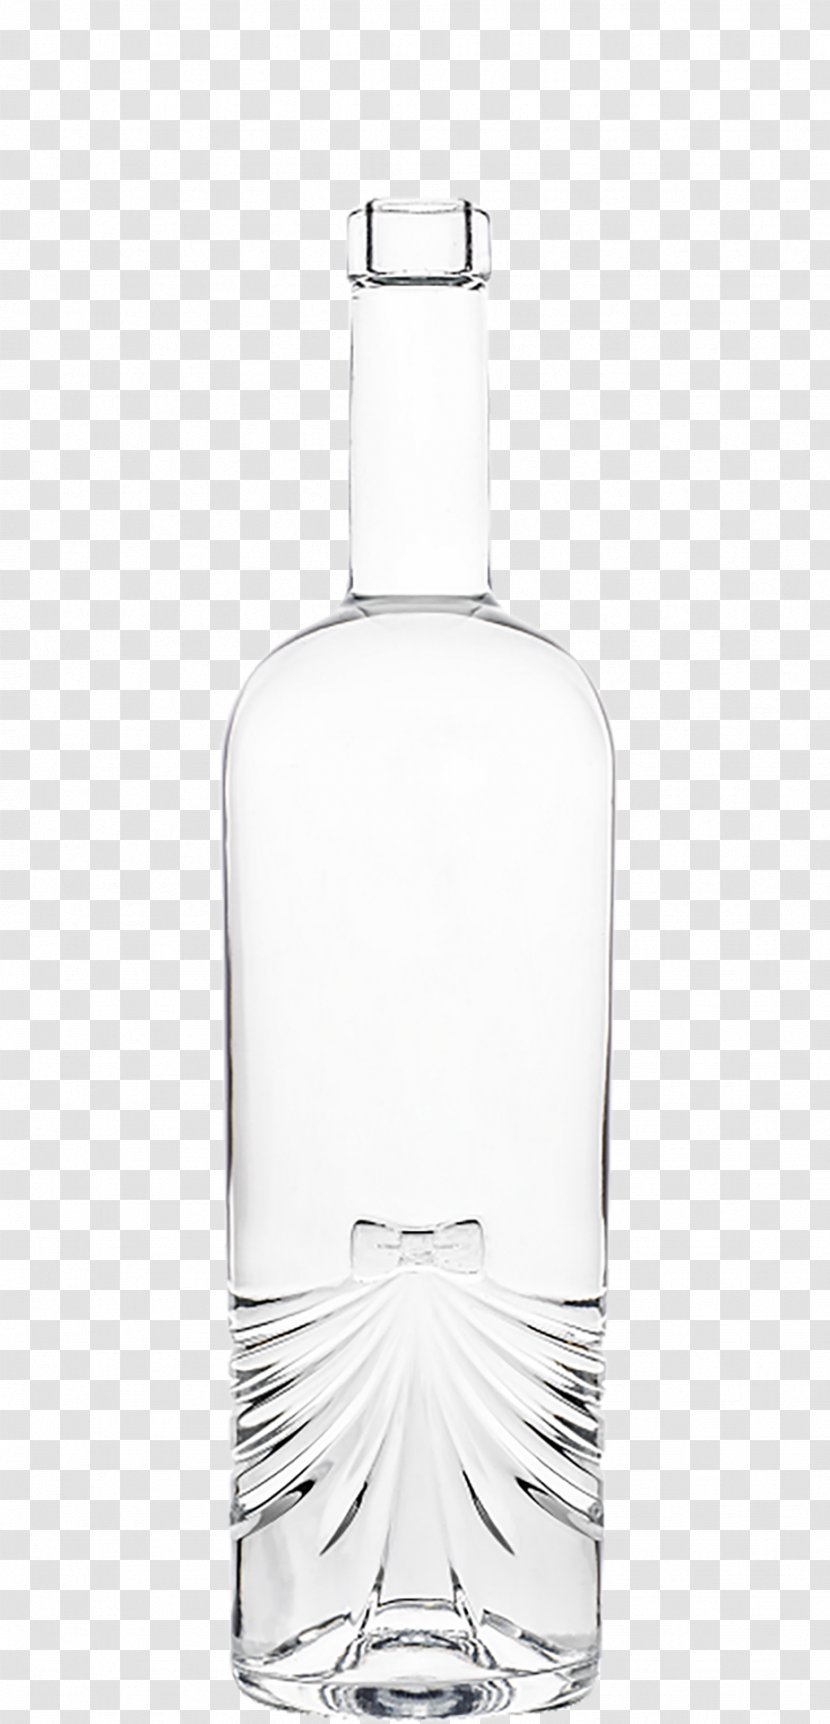 Glass Bottle Wine Distilled Beverage Bung - Floral Bottles Transparent PNG